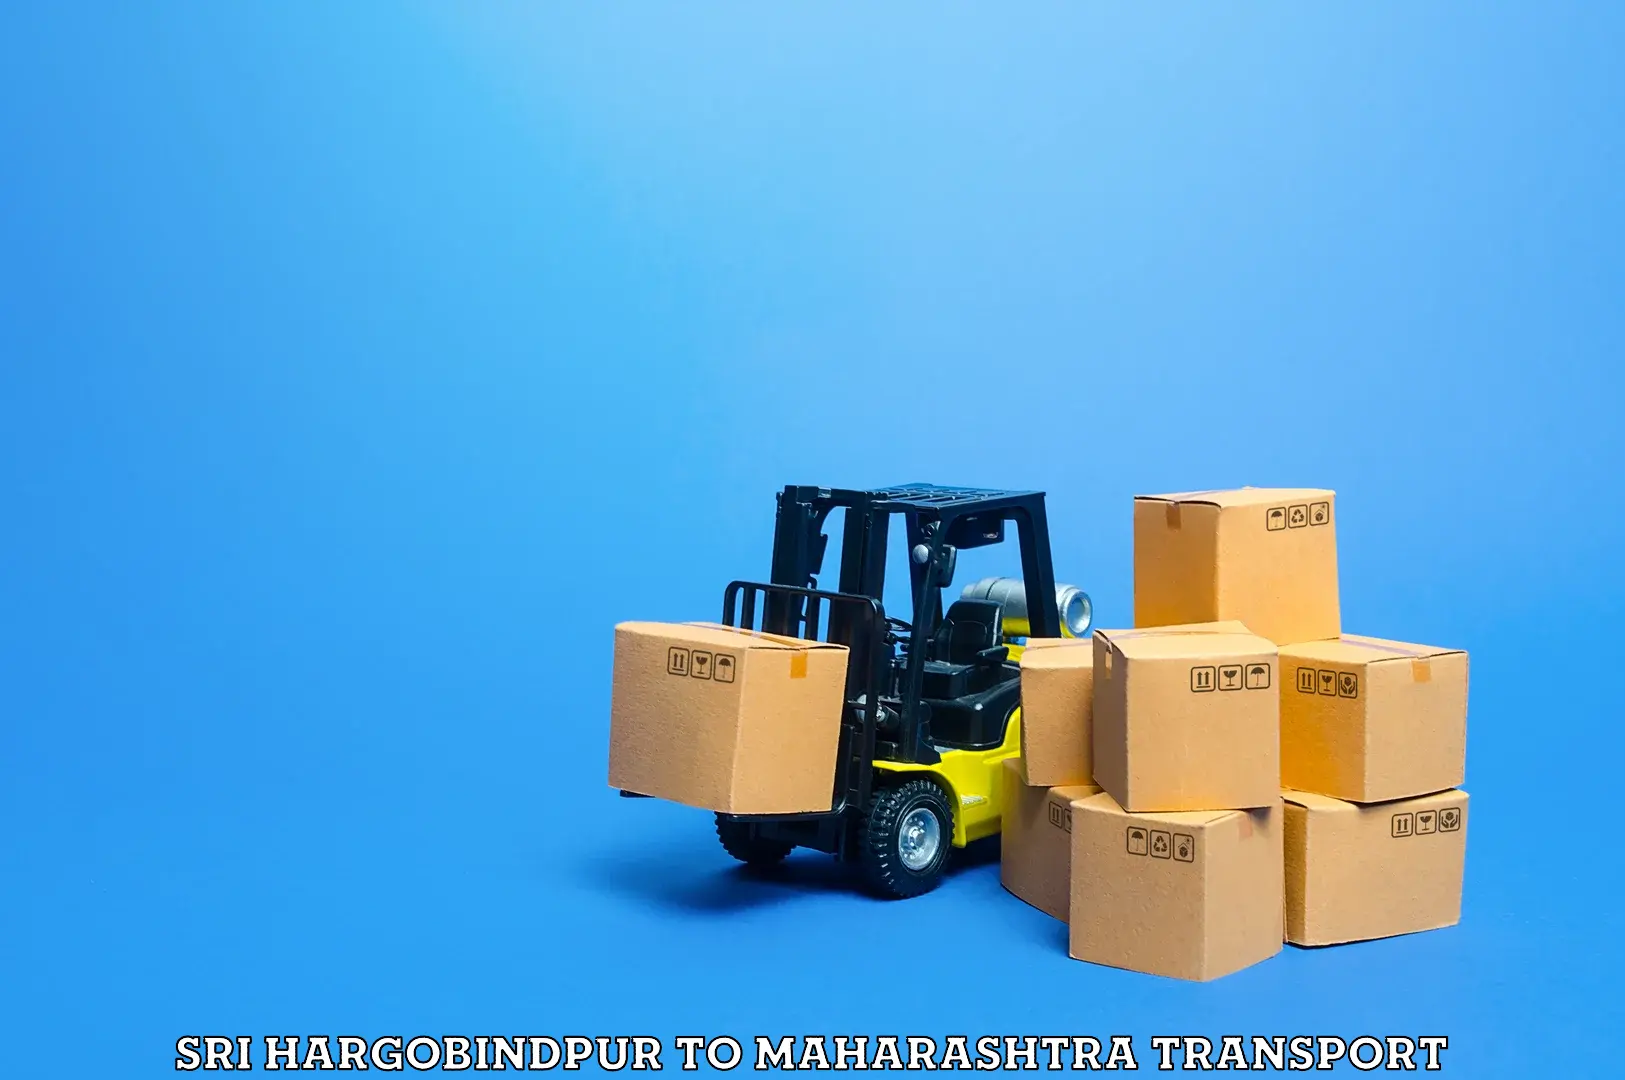 Shipping partner Sri Hargobindpur to Mahim